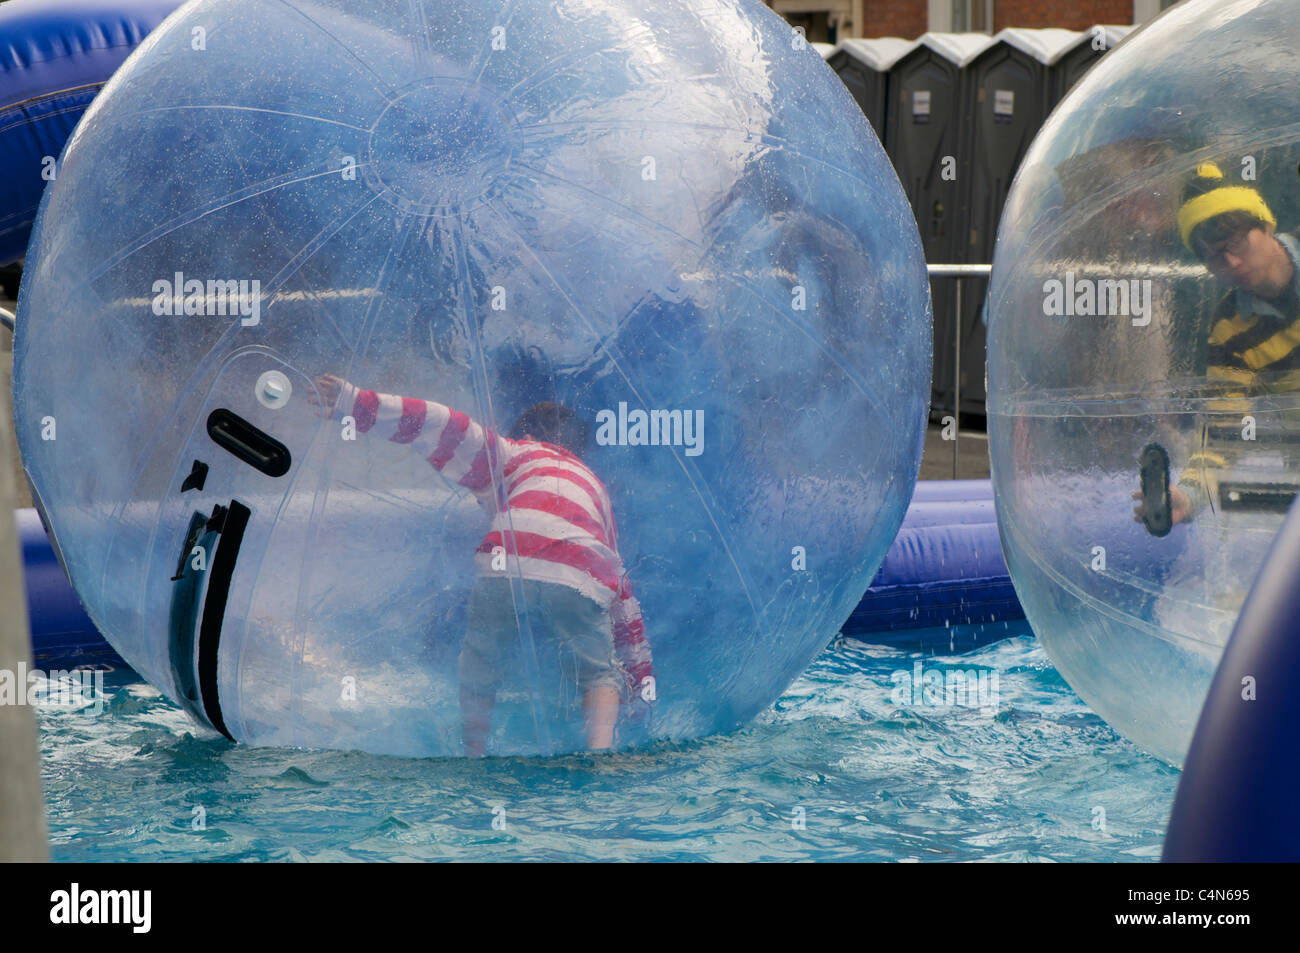 Pallone gonfiabile immagini e fotografie stock ad alta risoluzione - Alamy